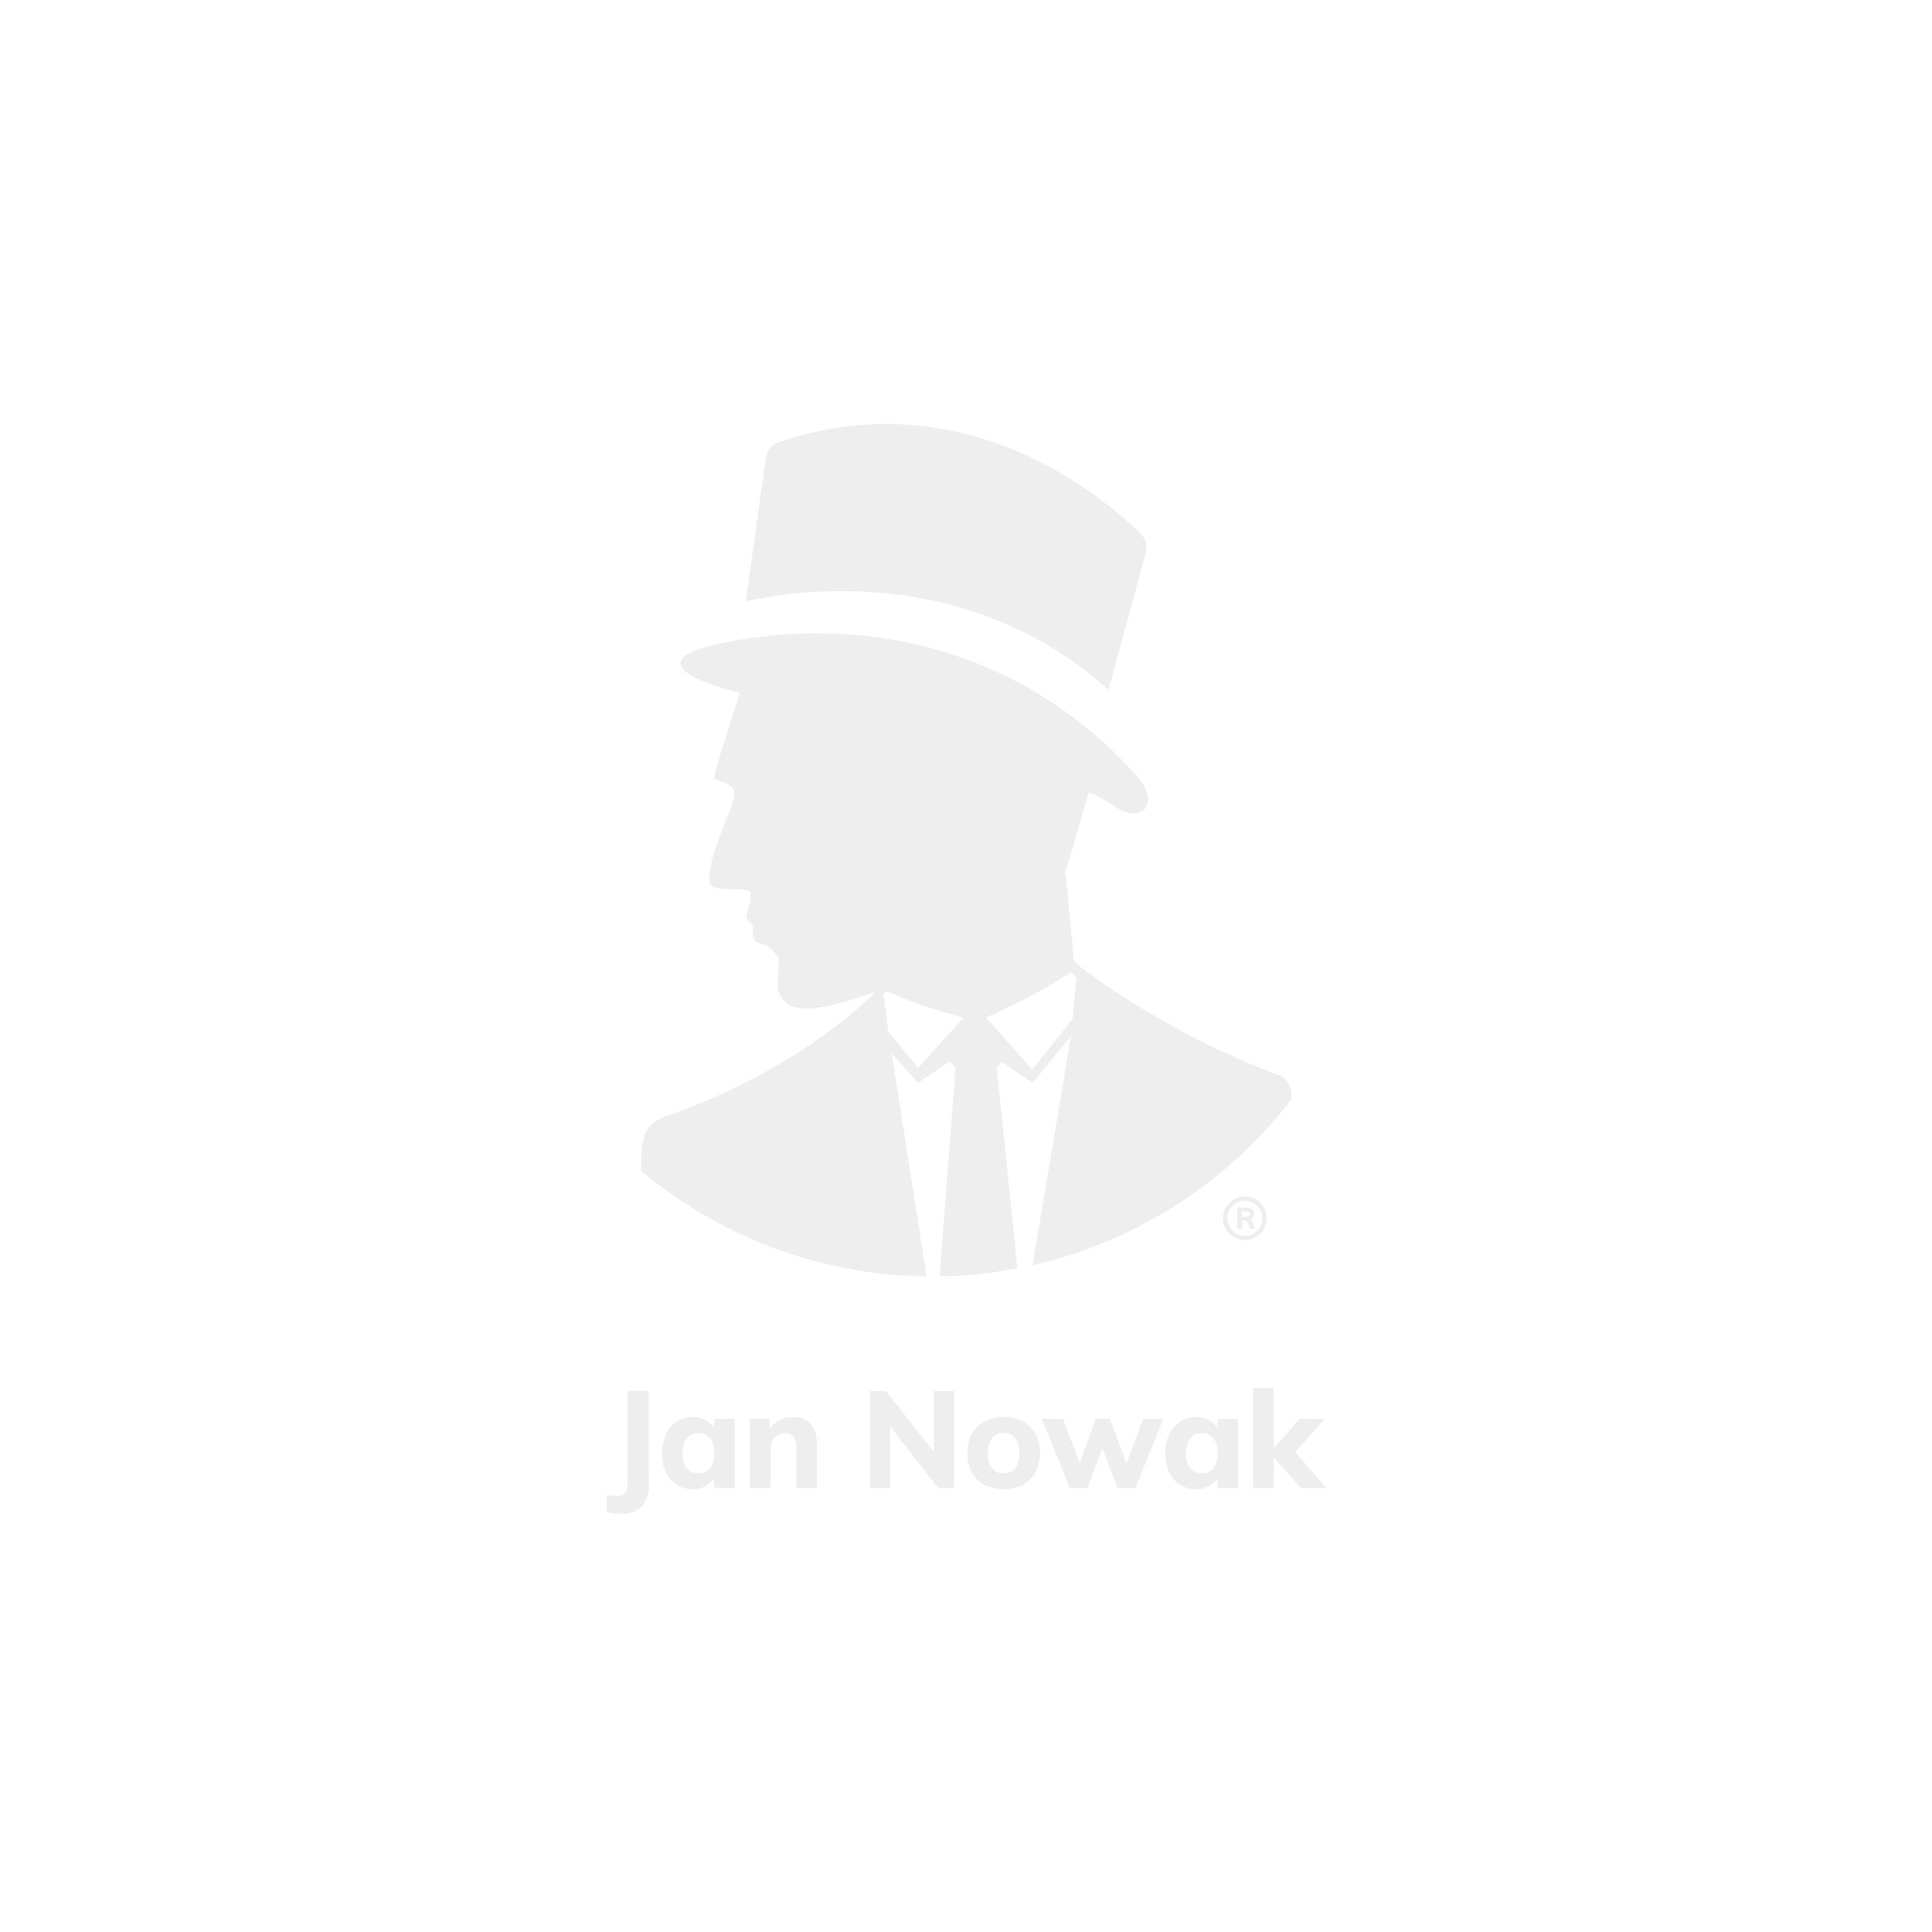 JAN NOWAK model SARA V005 460x1630x620 metalowa szafa kartotekowa antracytowo-biała